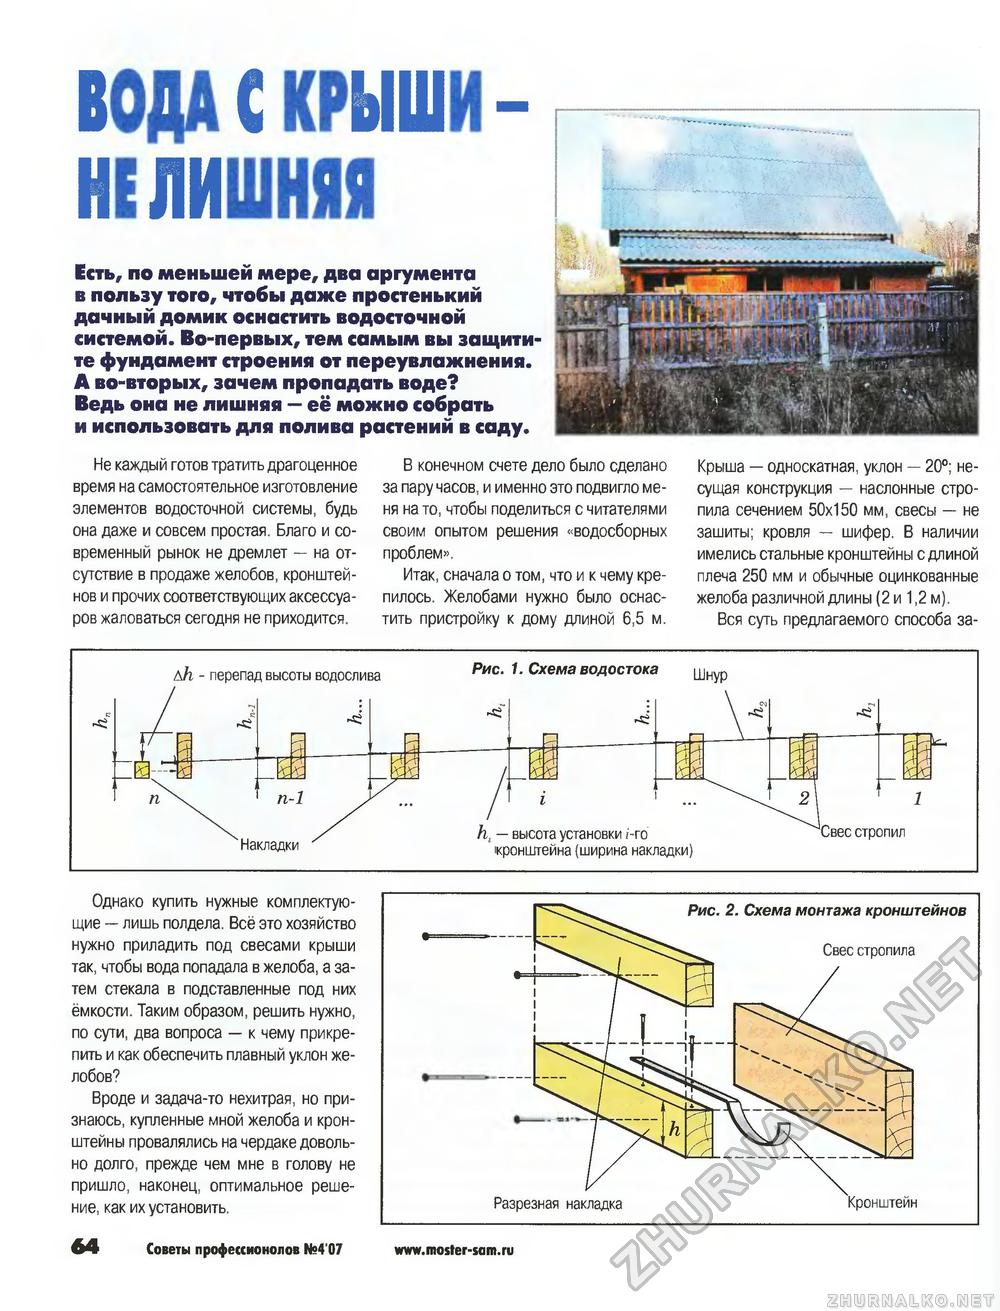 Советы профессионалов 2007-04, страница 64